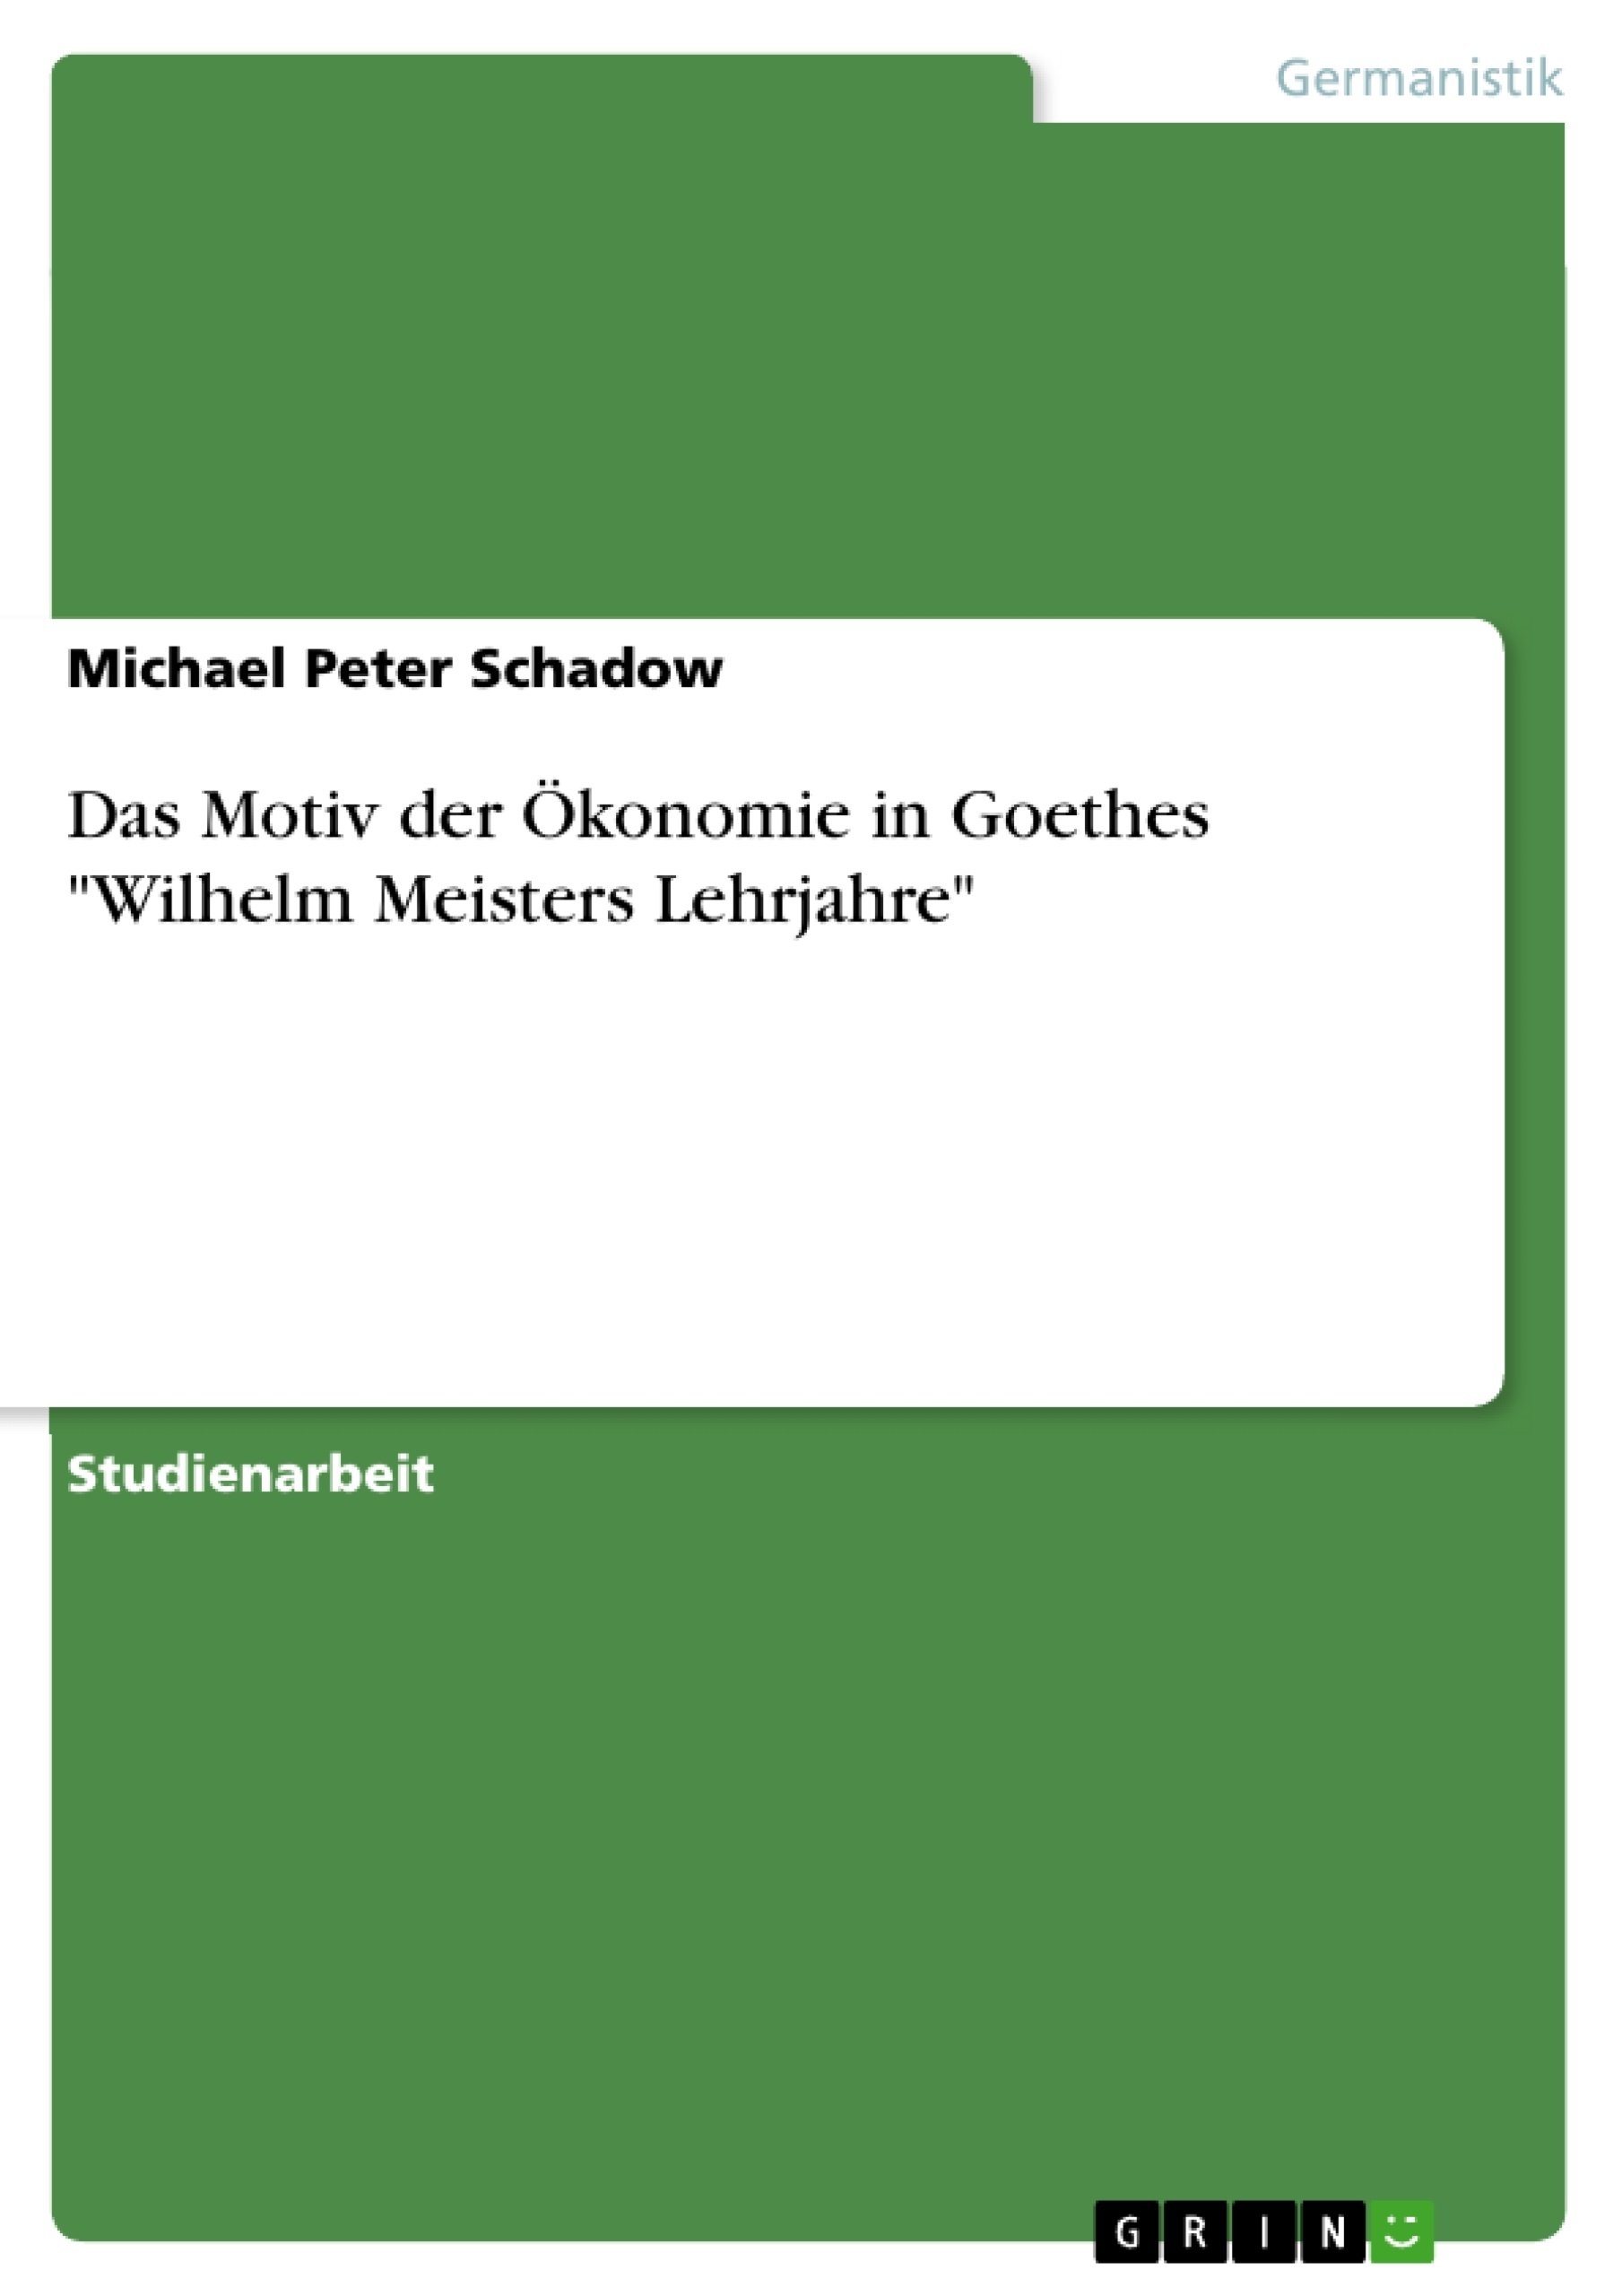 Titre: Das Motiv der Ökonomie in Goethes "Wilhelm Meisters Lehrjahre"